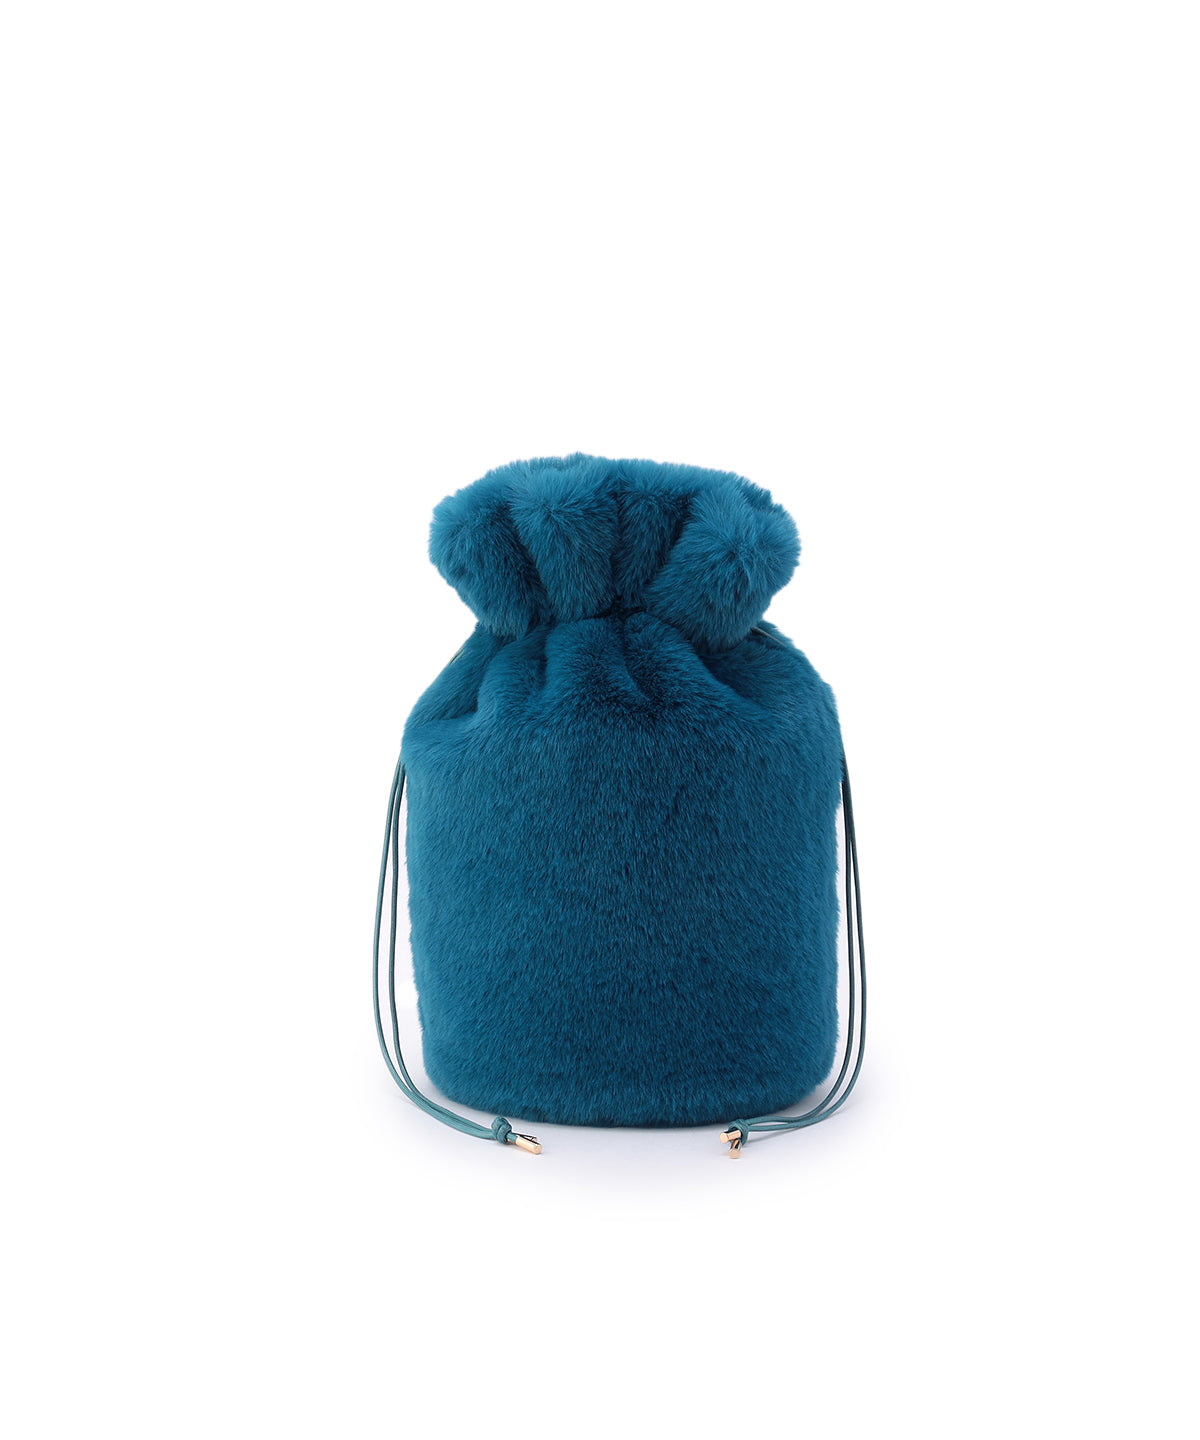 Eco Fur Drawstring Bag(Medium)E.BLUE